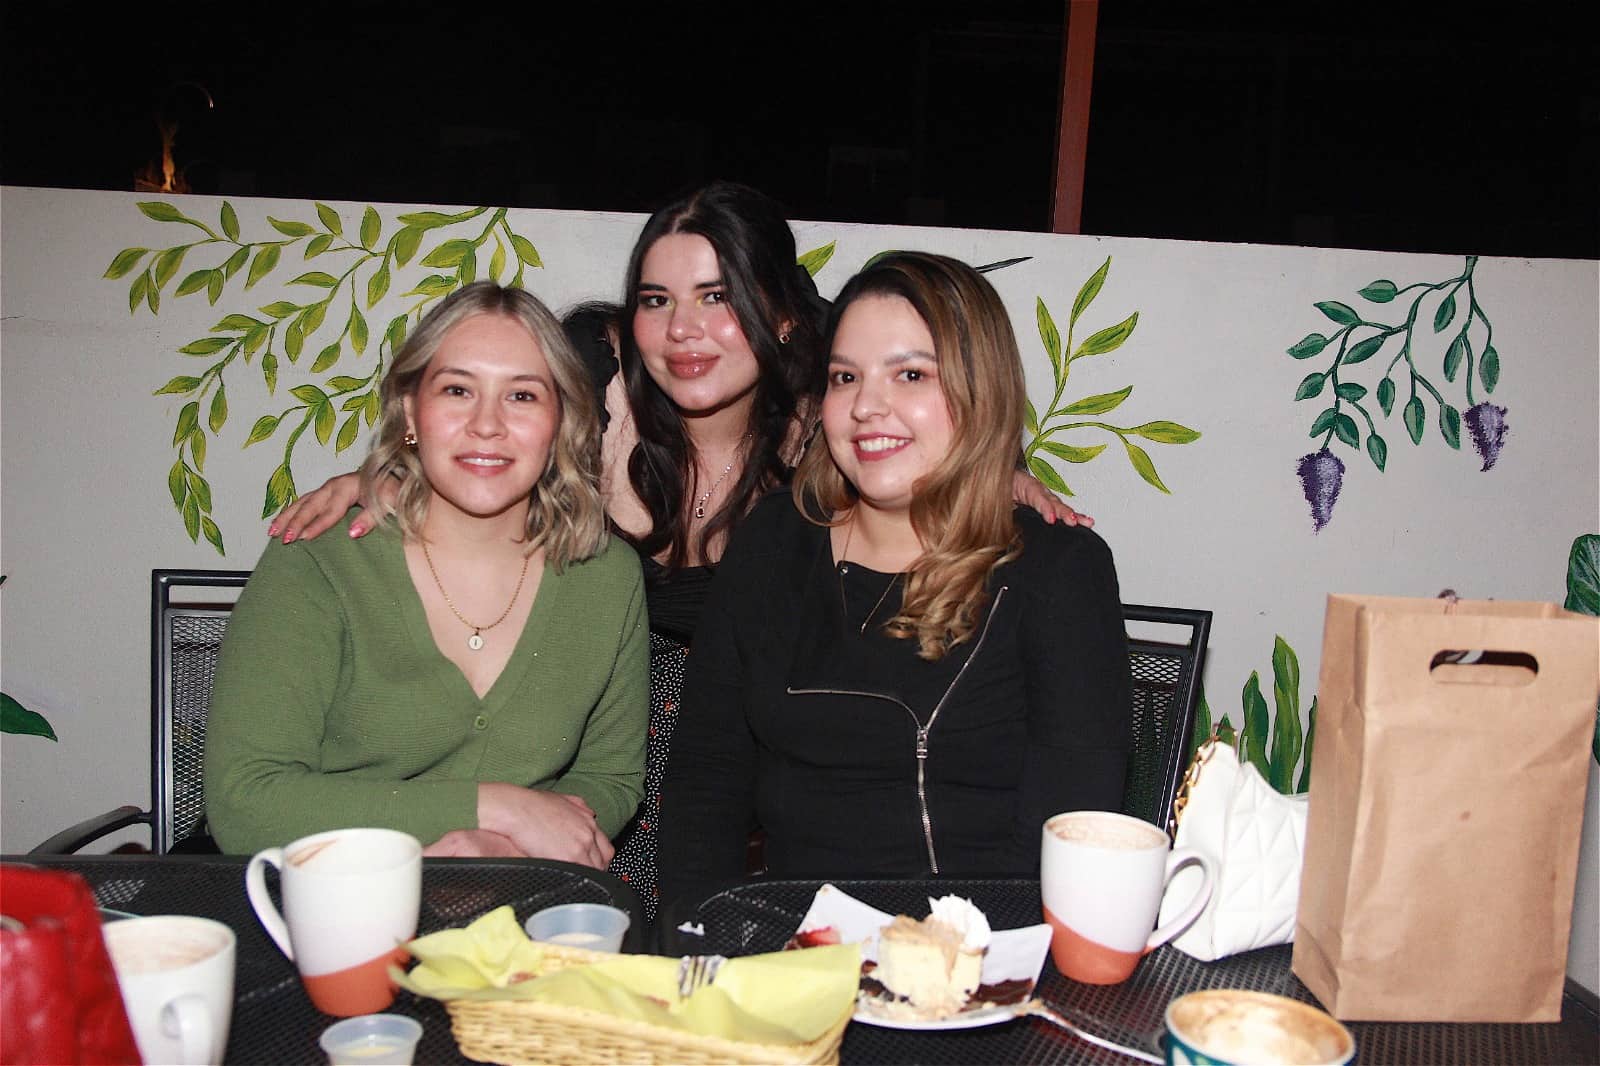 En Casa Garmendia, Café y Churrería hay una agradable plática con amigos